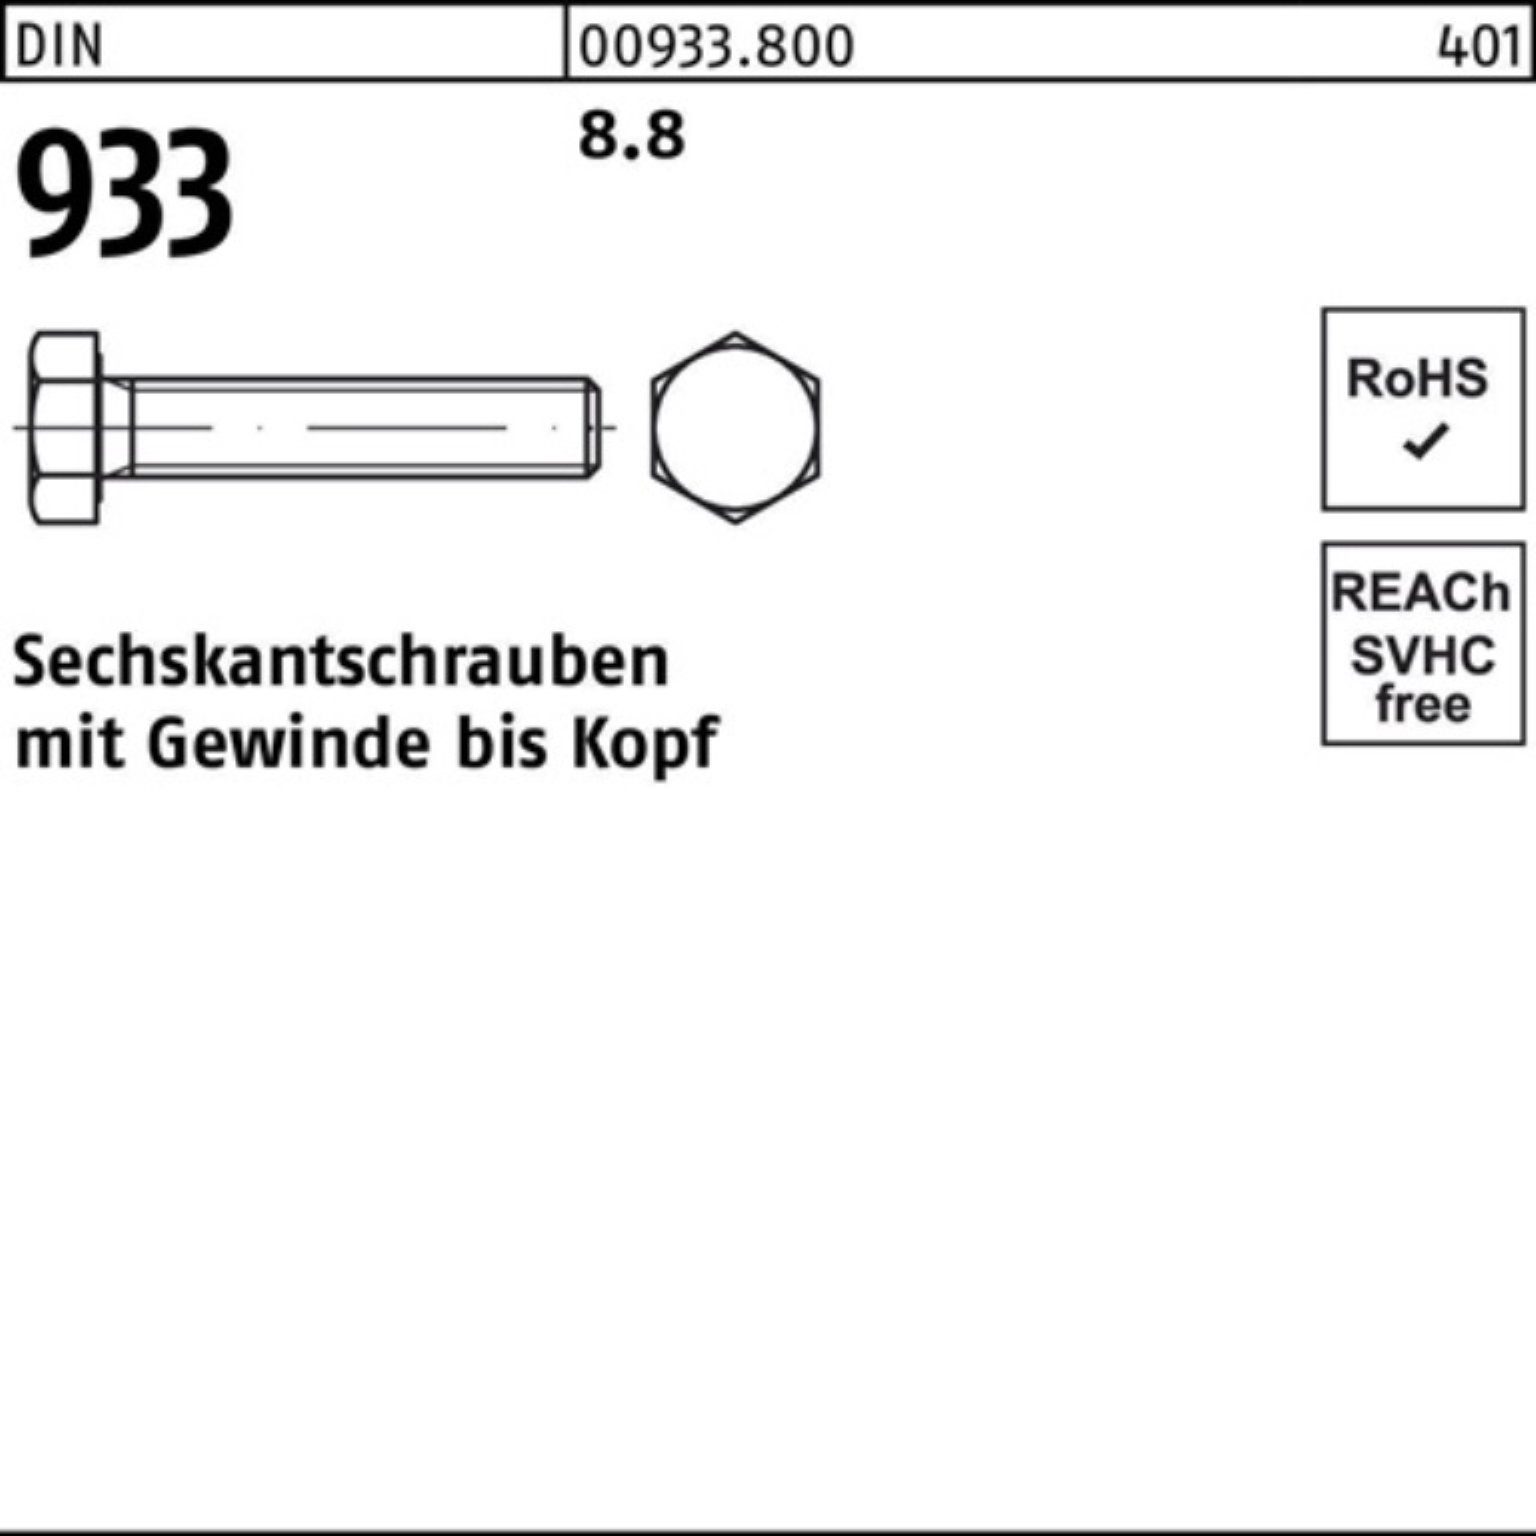 Reyher Sechskantschraube 500 Sechskantschraube 5 DIN Stück 933 500er DIN 933 8.8 Pack 8 VG M3x